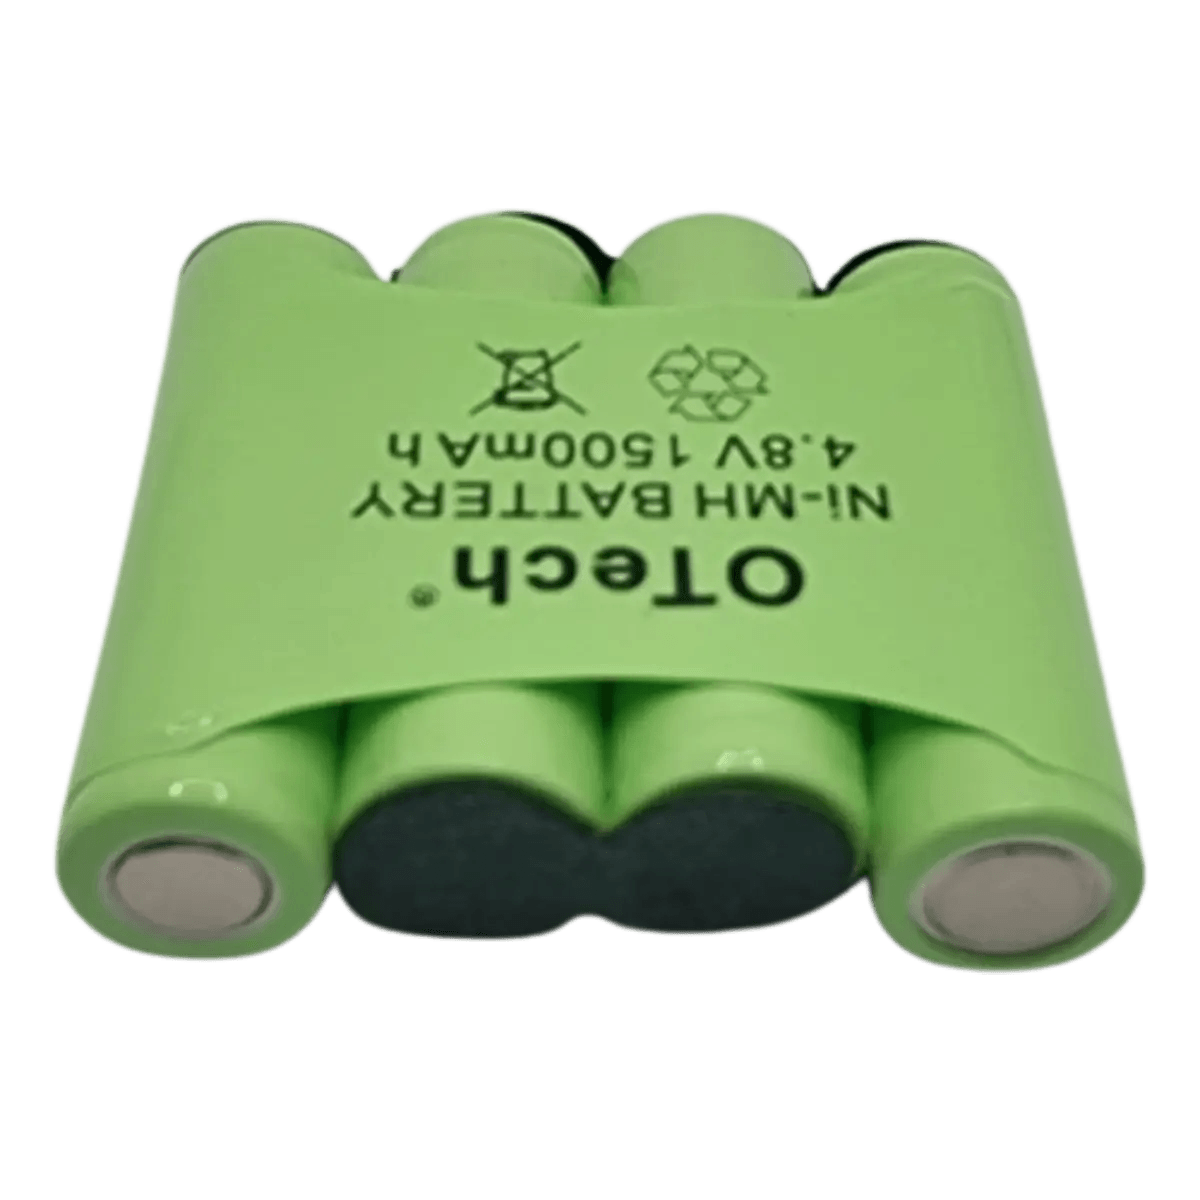 Batterie Compatible pour électro-stimulateur Compex 4.8v 1500mAh NiMh